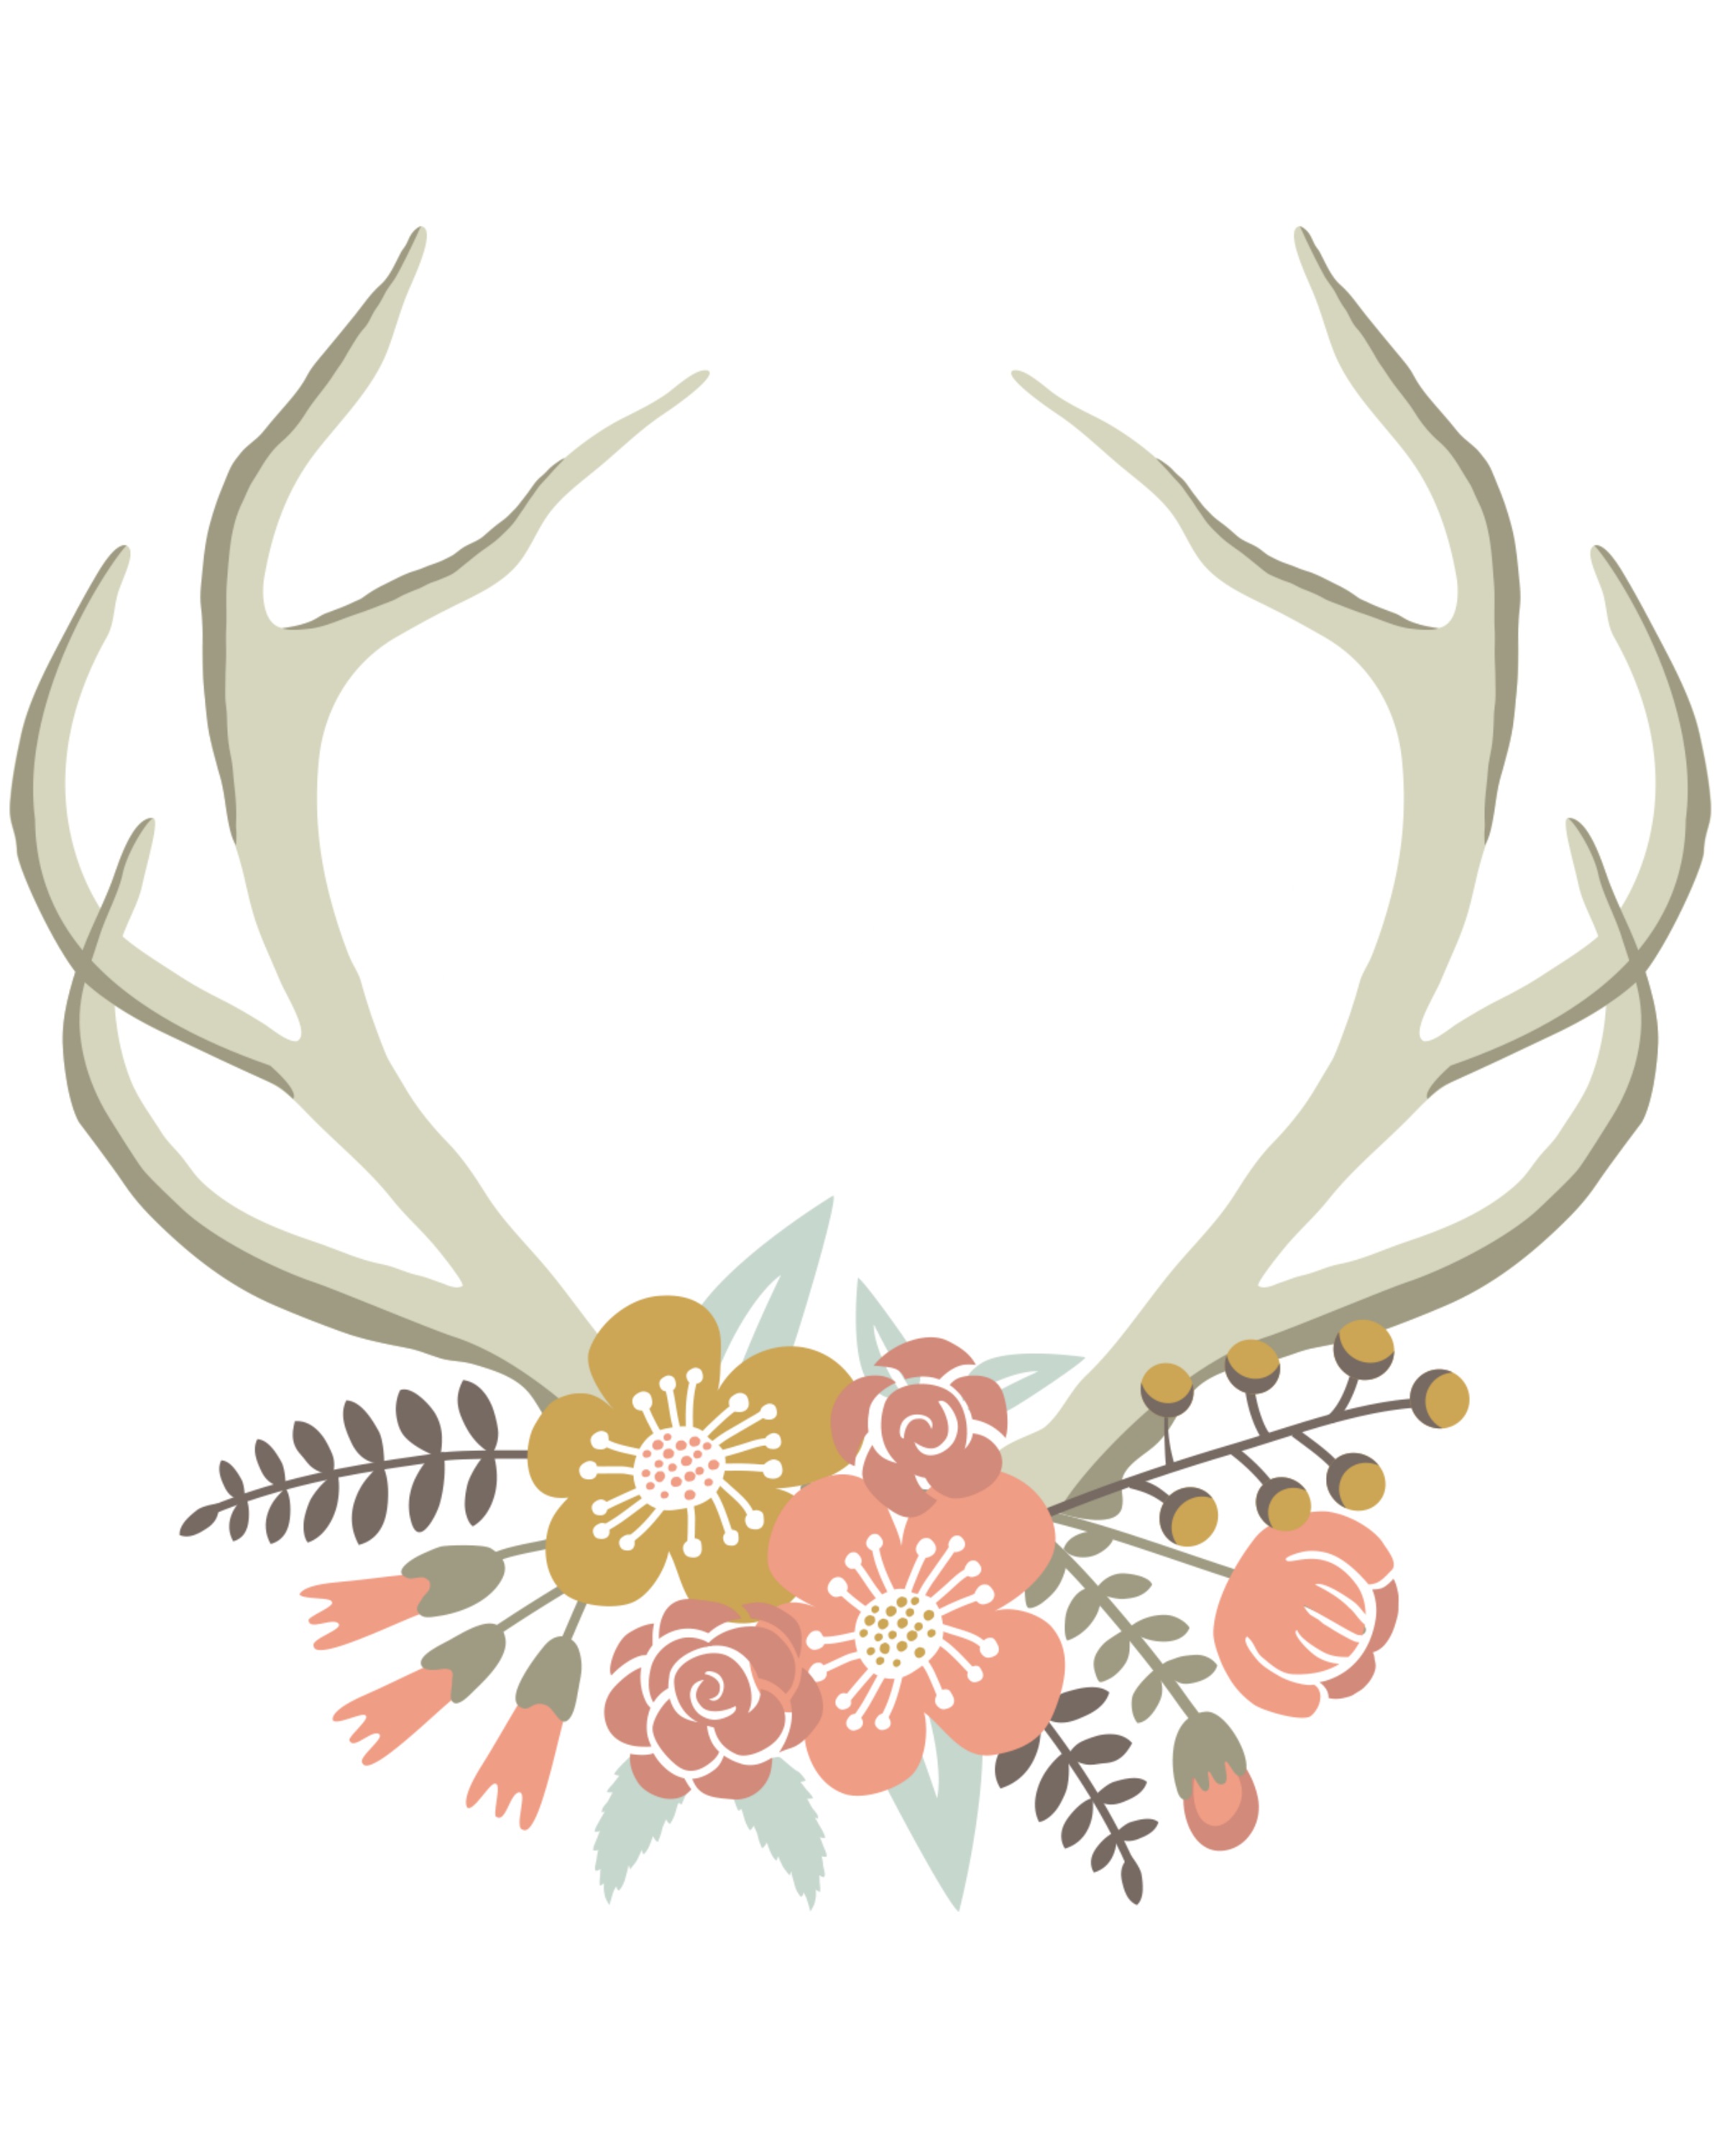 Floral Deer Crown free nursery or gallery wall printable. Download